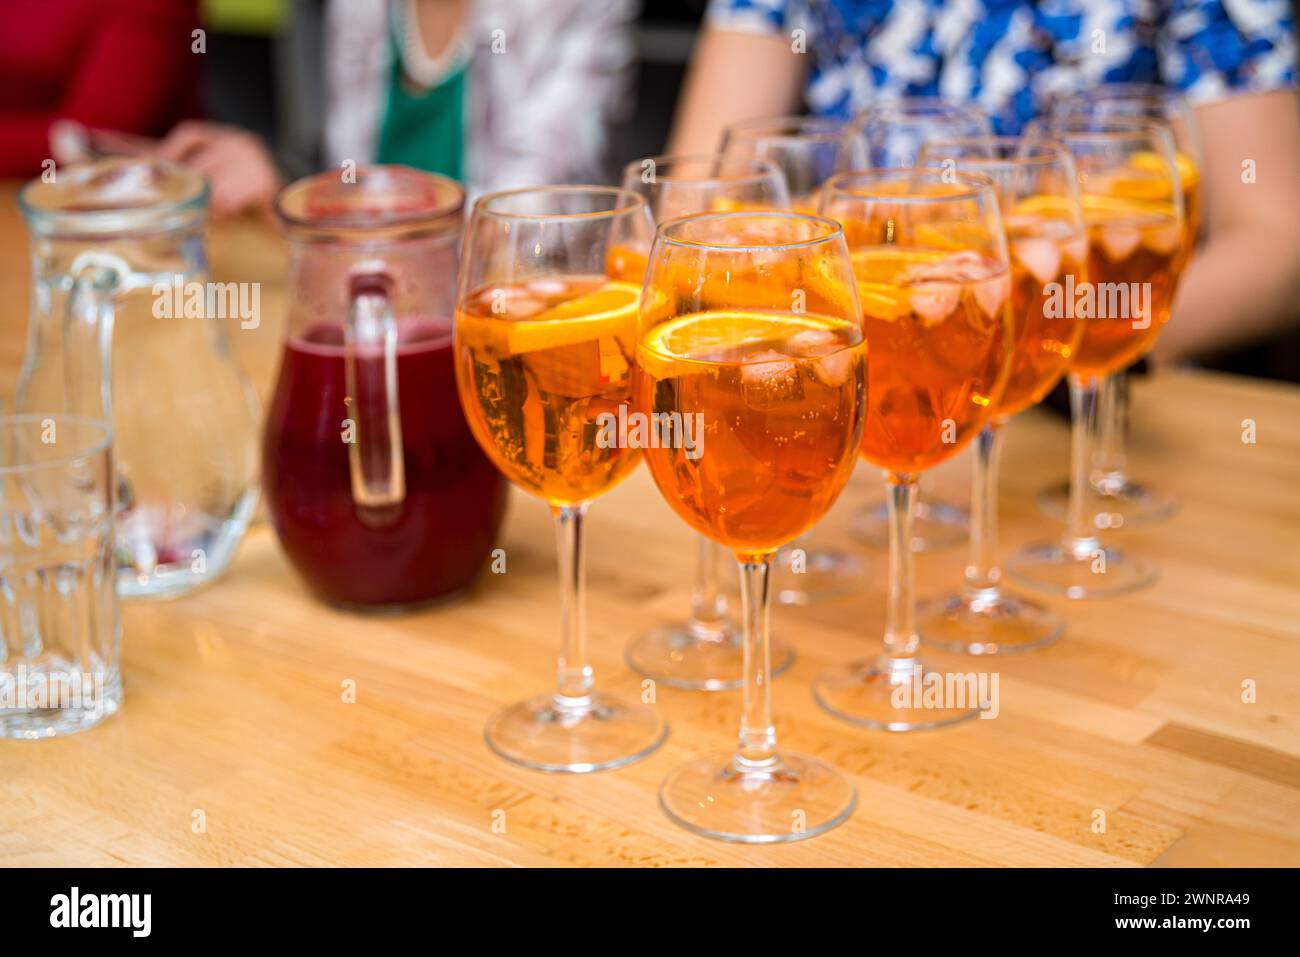 Rinfrescanti cocktail Aperol Spritz serviti in bicchieri da vino, guarniti con fette d'arancia, perfetti per una riunione sociale o una festa. Foto Stock